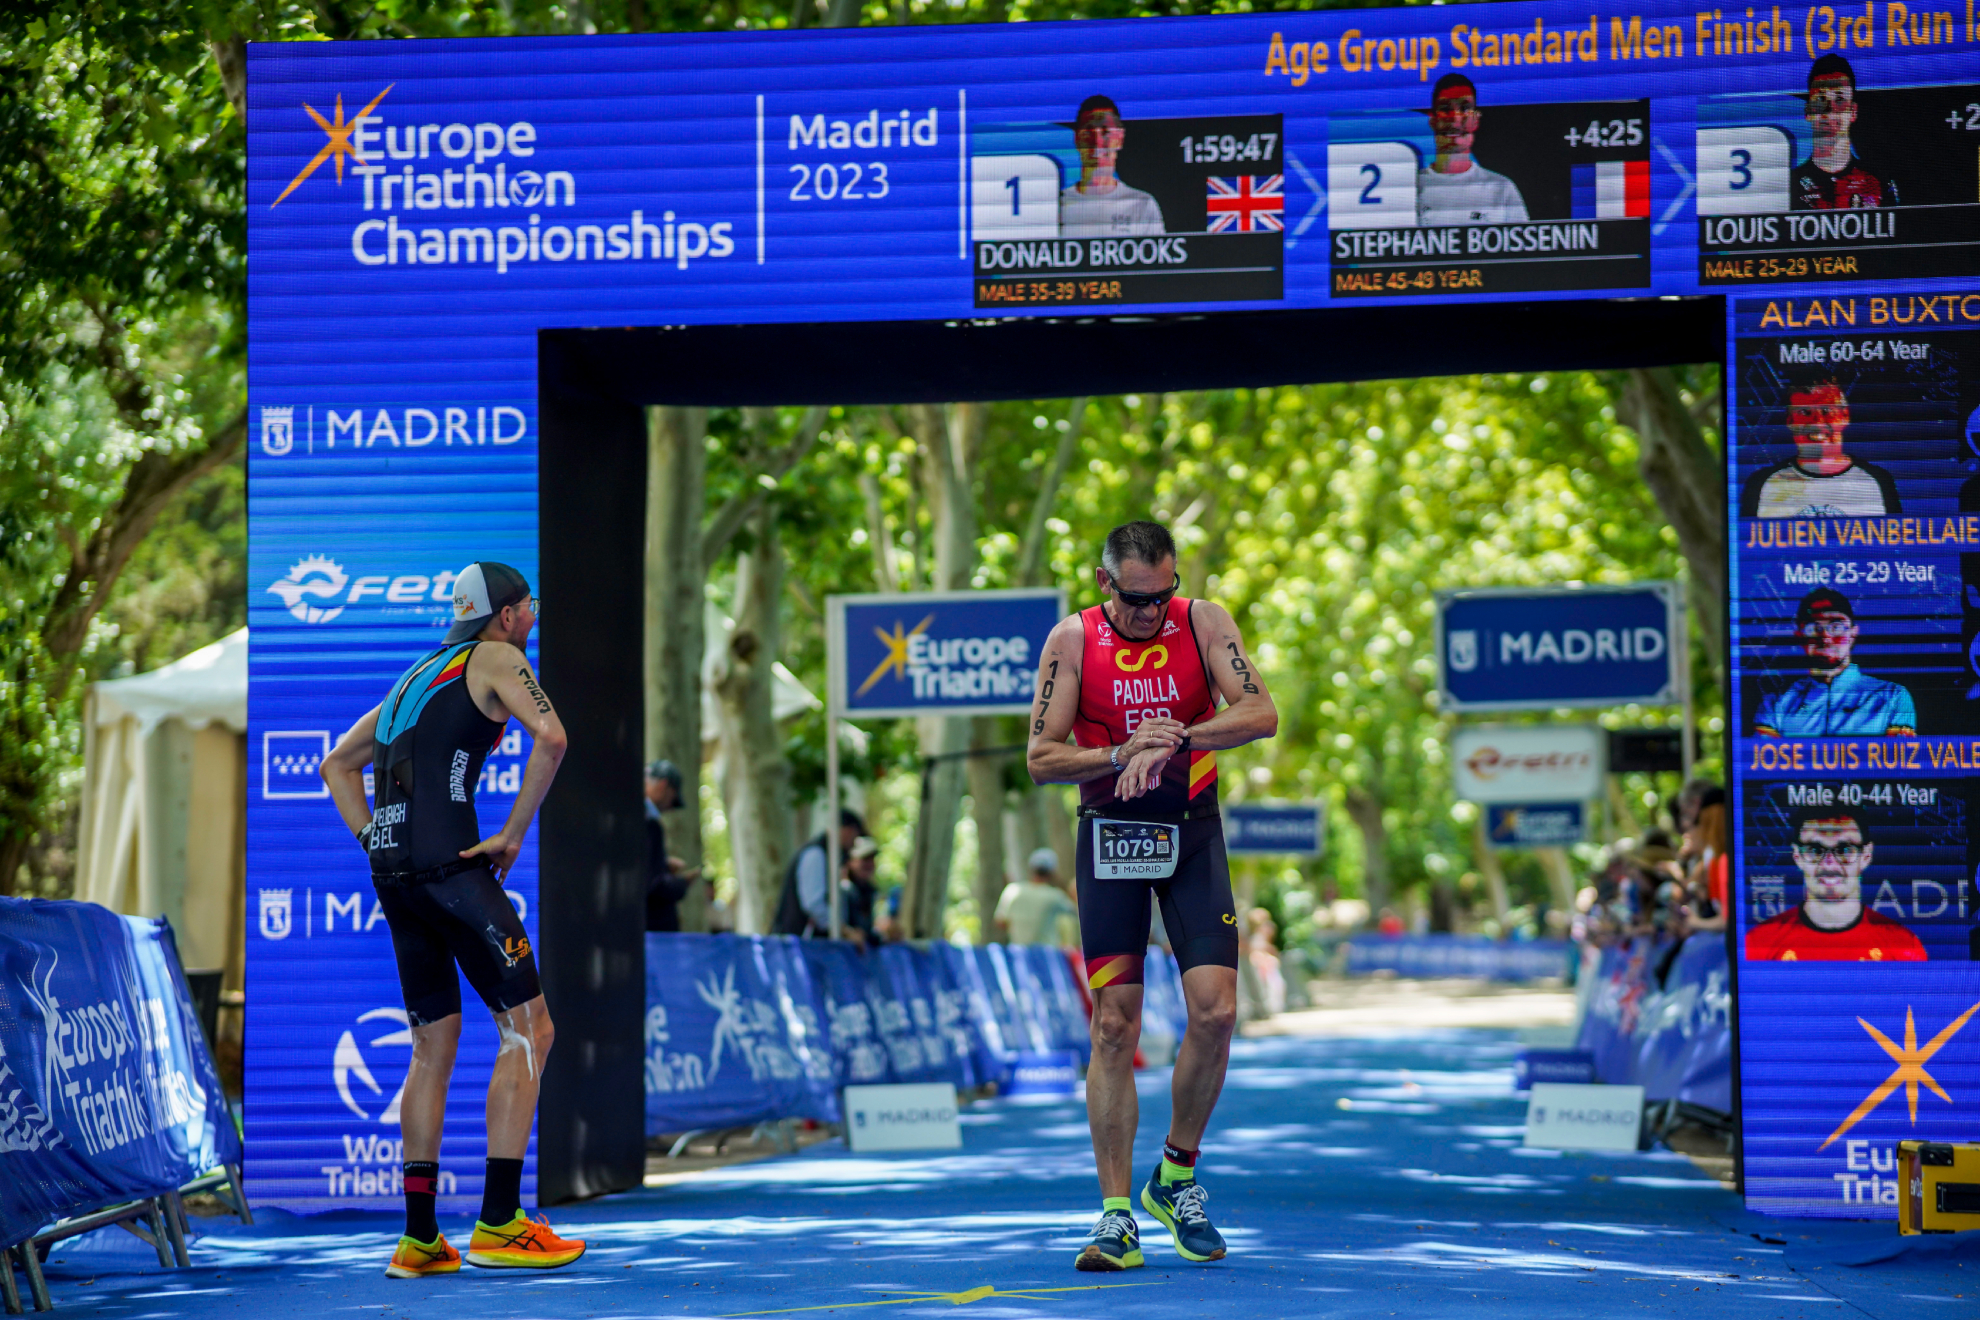 El triatlón español apuesta por la tecnología, la innovación y el compromiso social